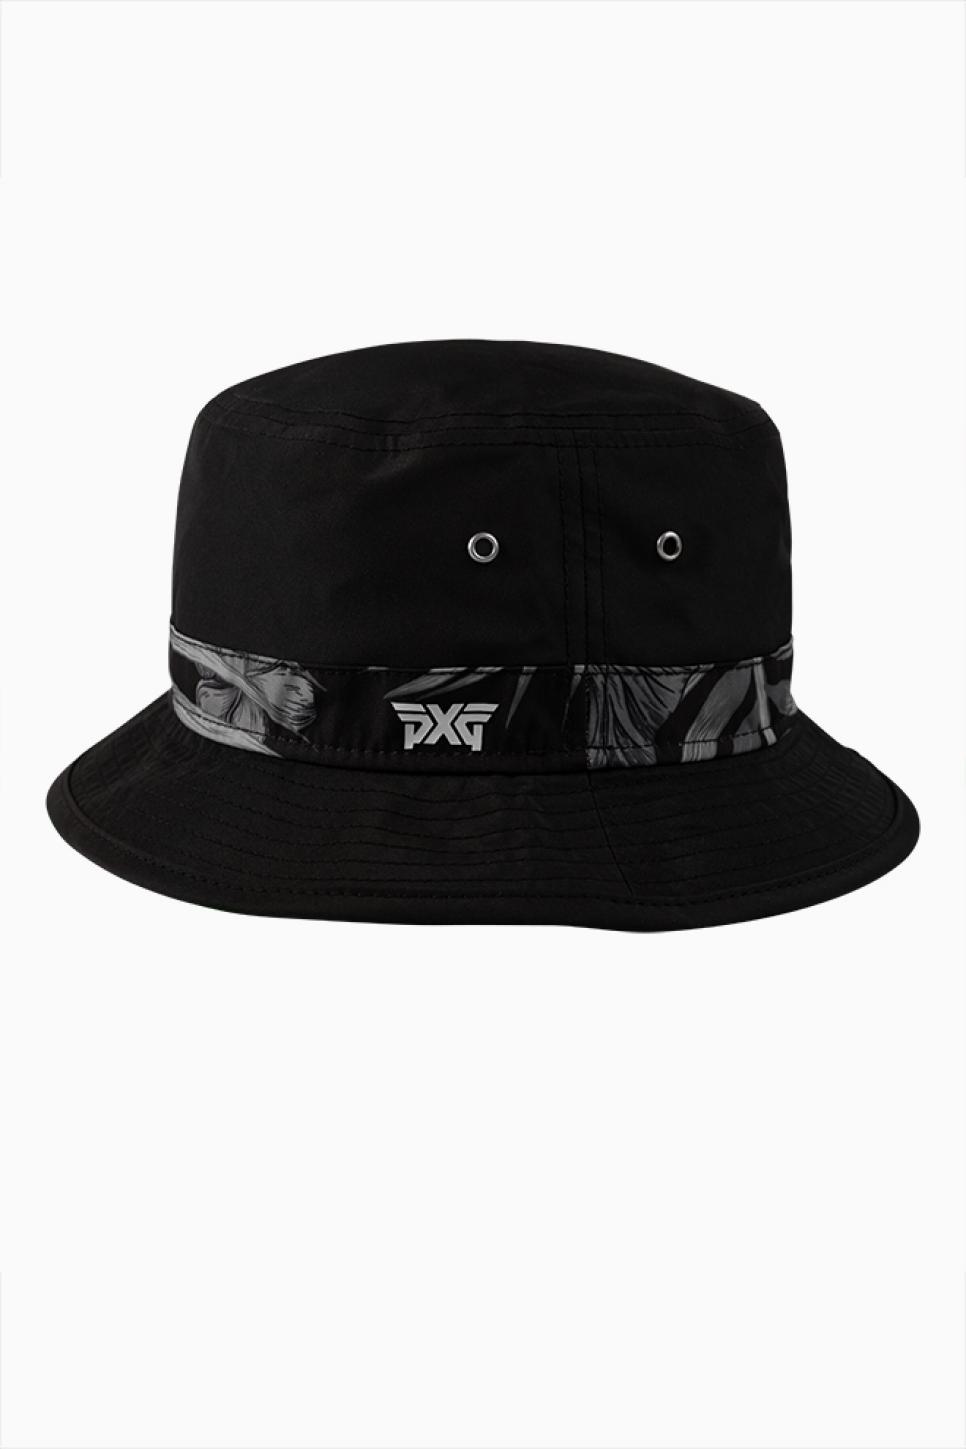 PXG Aloha Bucket Hat